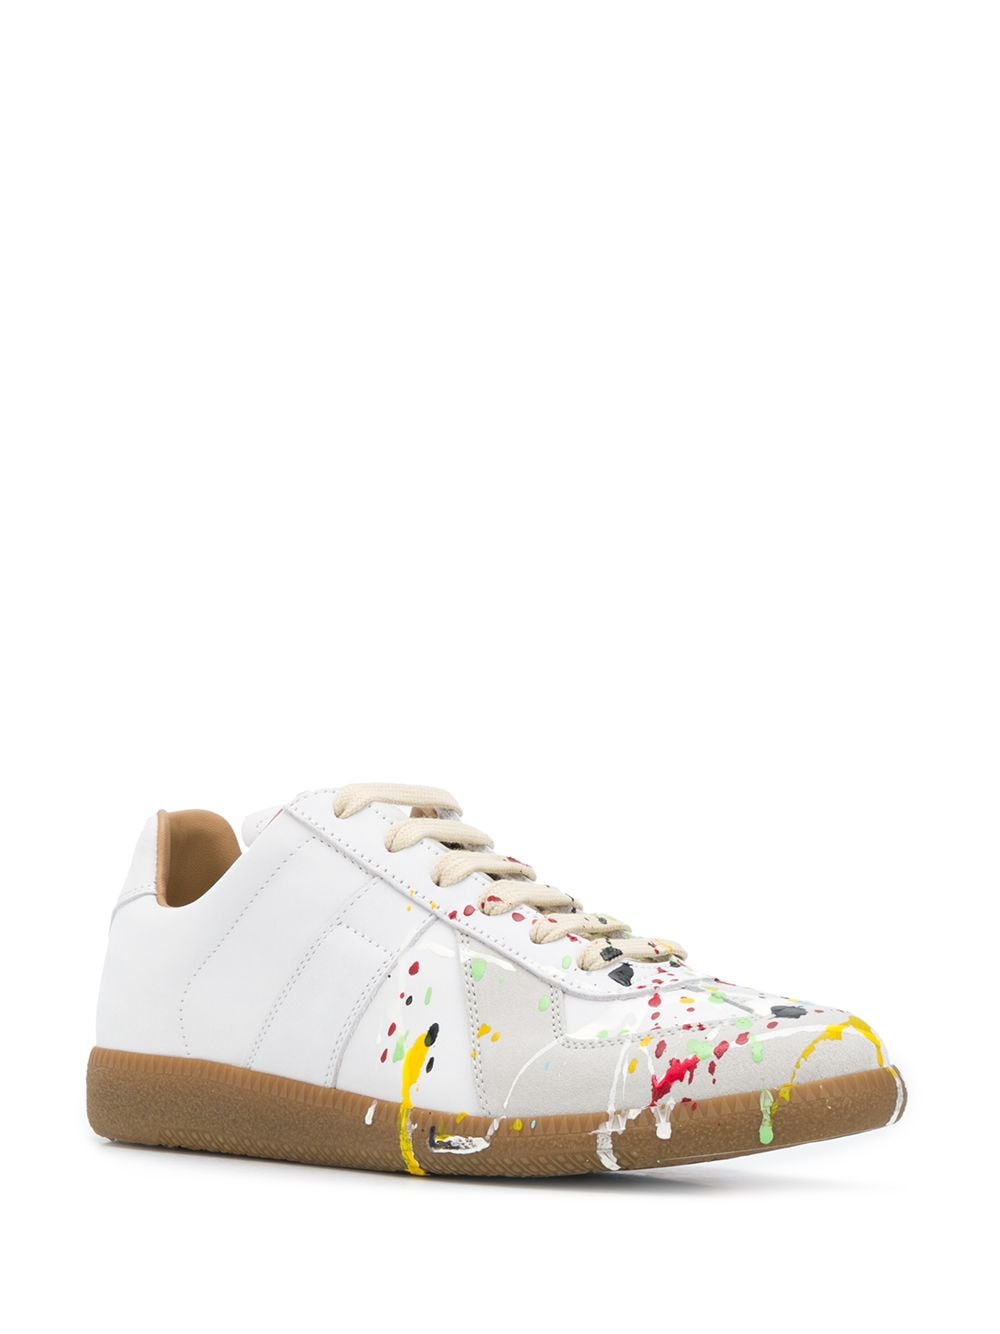 Replica Paint Splatter Sneaker - White / Multi 42